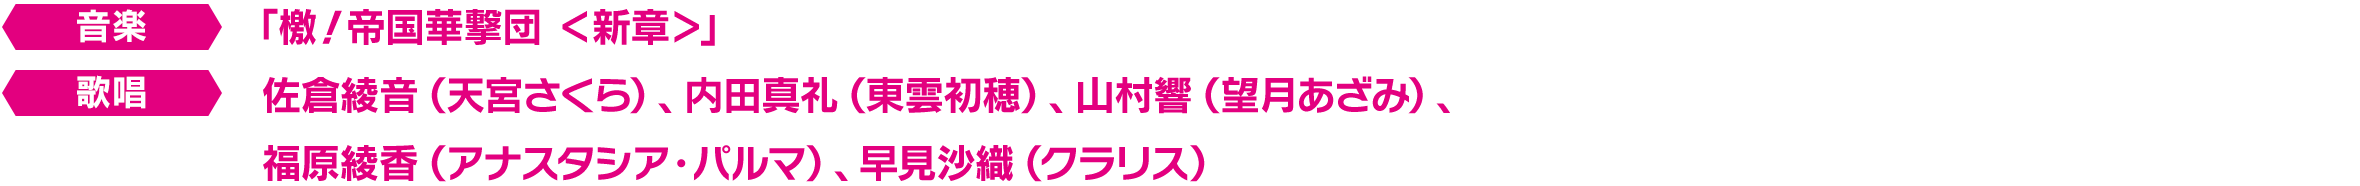 帝国華撃団・花組 PS4用ダイナミックテーマ